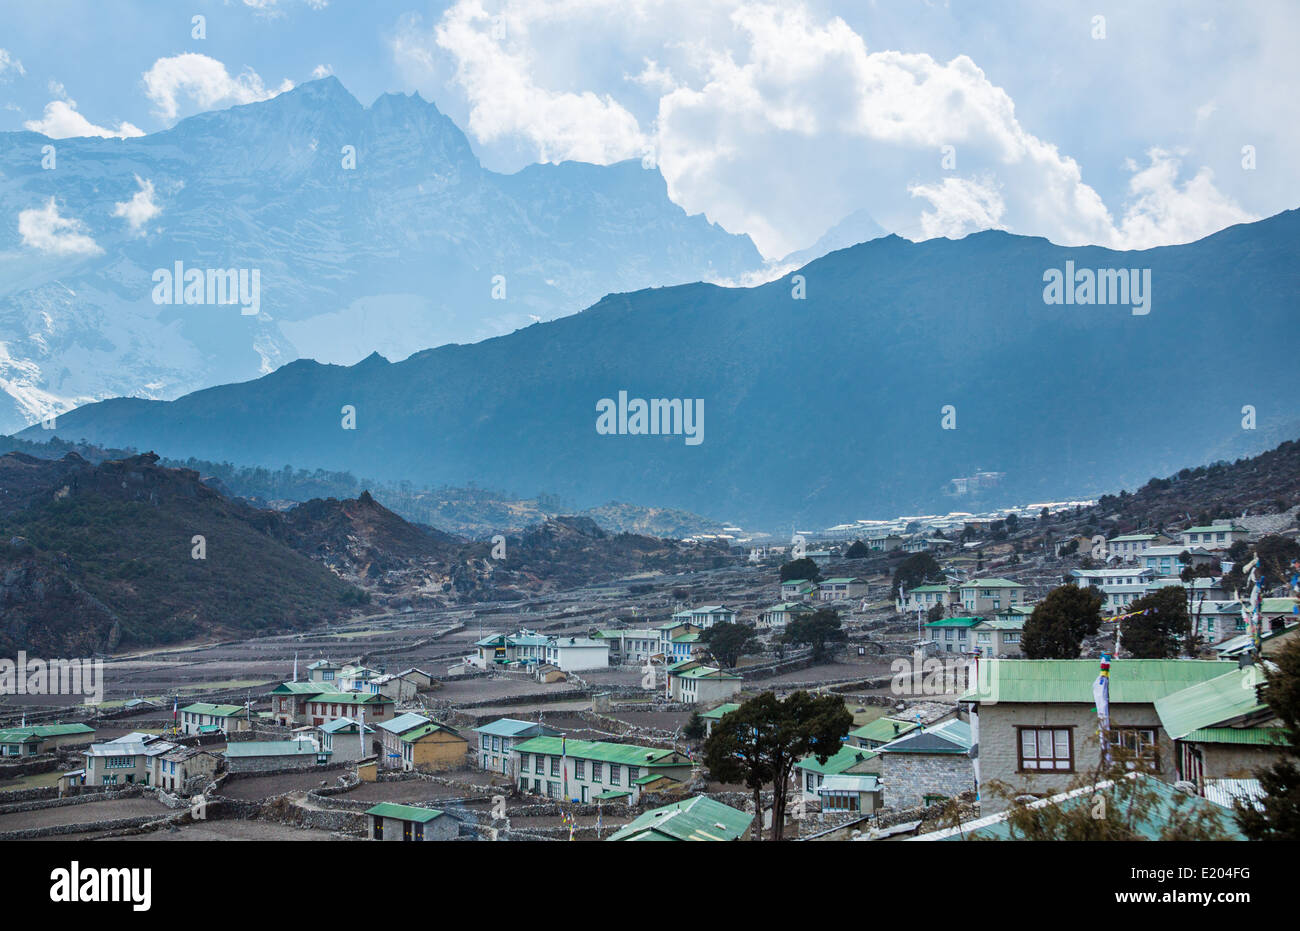 Le Népal village de Khumjung dans la soirée, exprimés dans l'ombre de l'Himalaya à la hausse dans la télécommande à distance, le Mt Everest, Himalay Banque D'Images